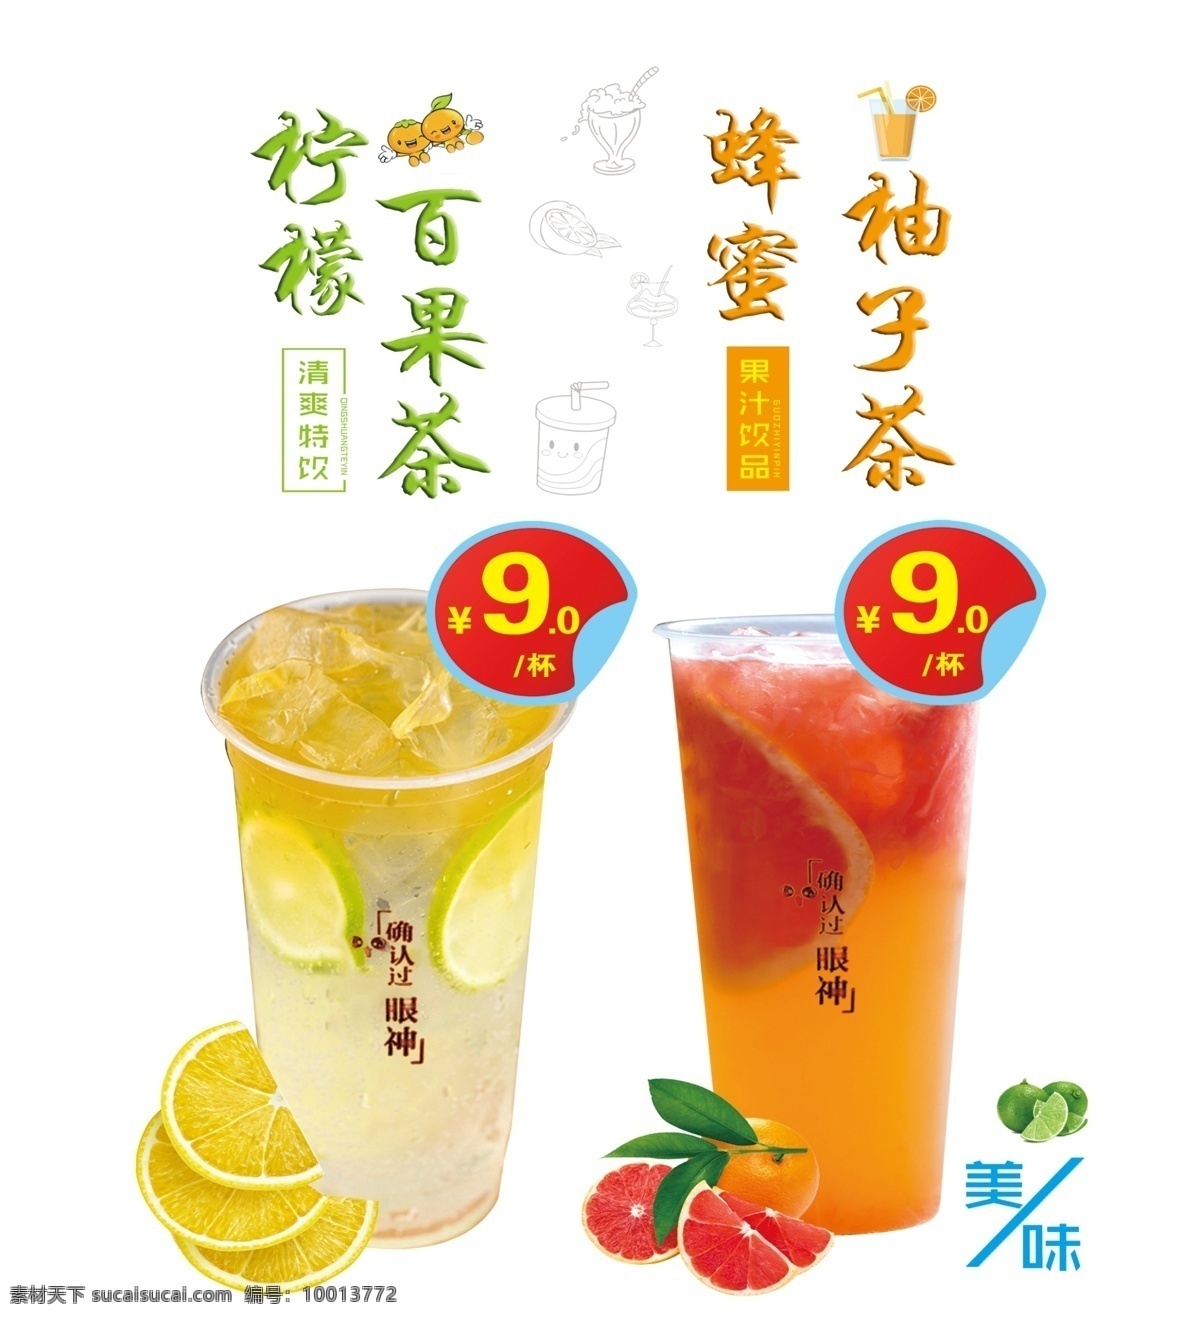 柠檬百果茶 蜂蜜柚子茶 传单 彩页 海报 单个大杯